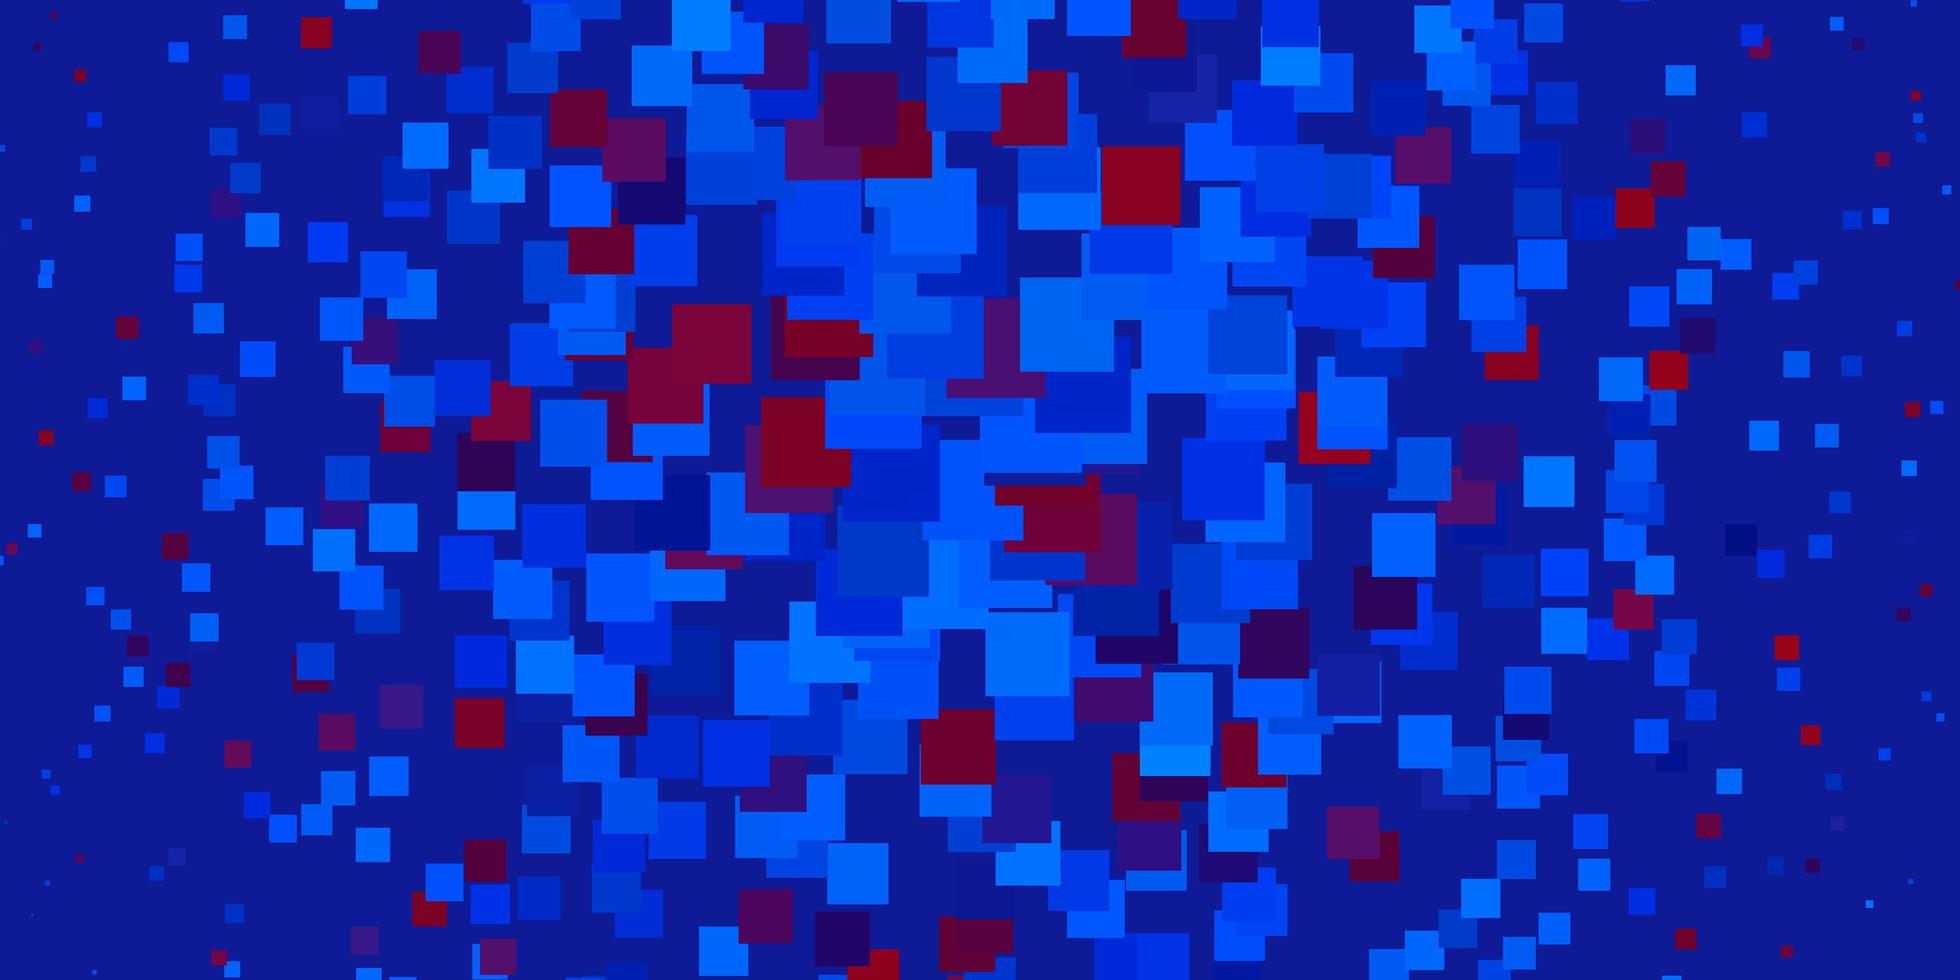 toile de fond de vecteur rouge bleu clair avec des rectangles nouvelle illustration abstraite avec des formes rectangulaires meilleur design pour votre bannière d'affiche publicitaire